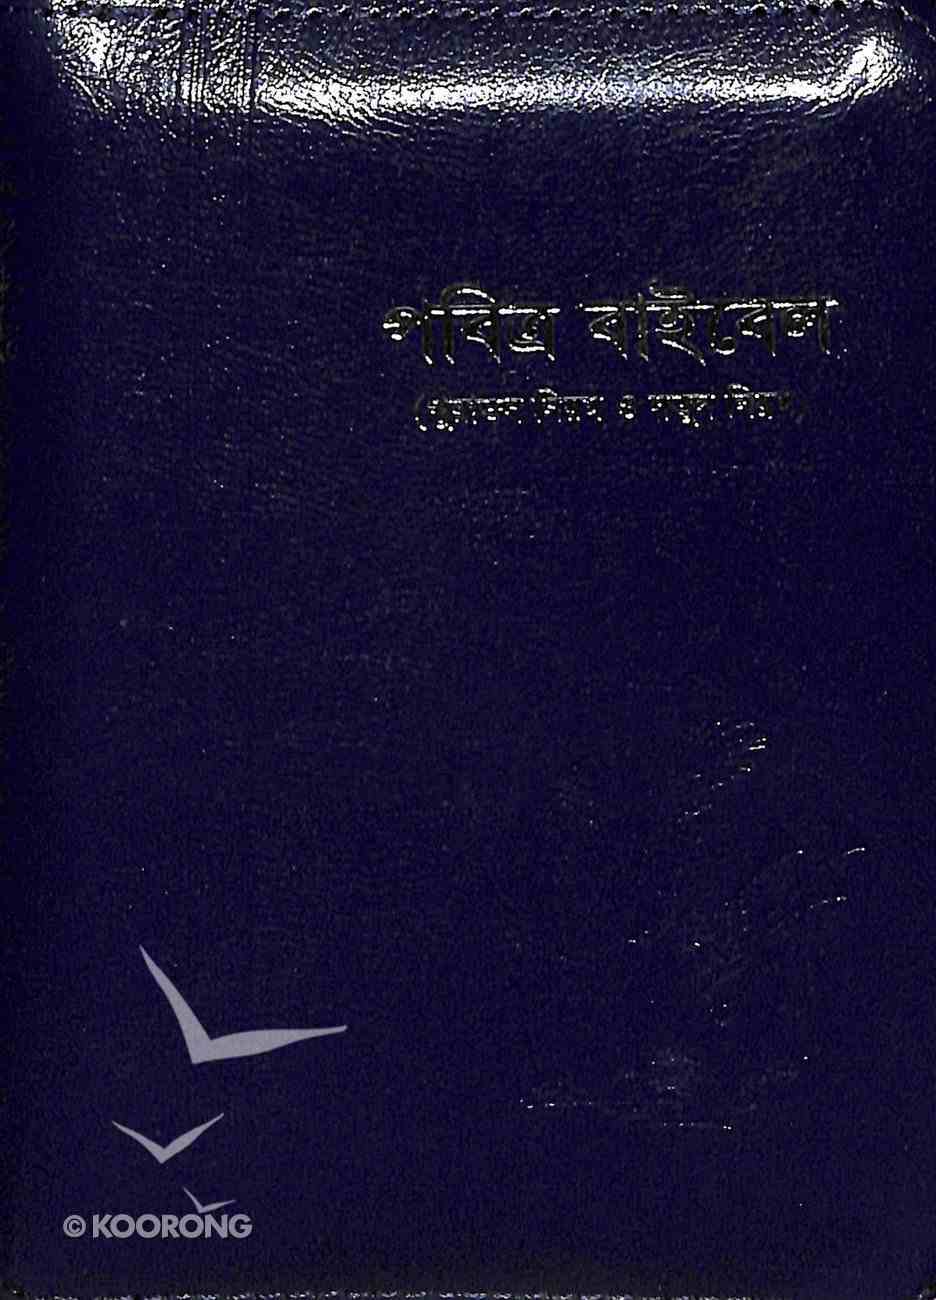 Bangala Common Language Bible (Zipped Closure) Imitation Leather